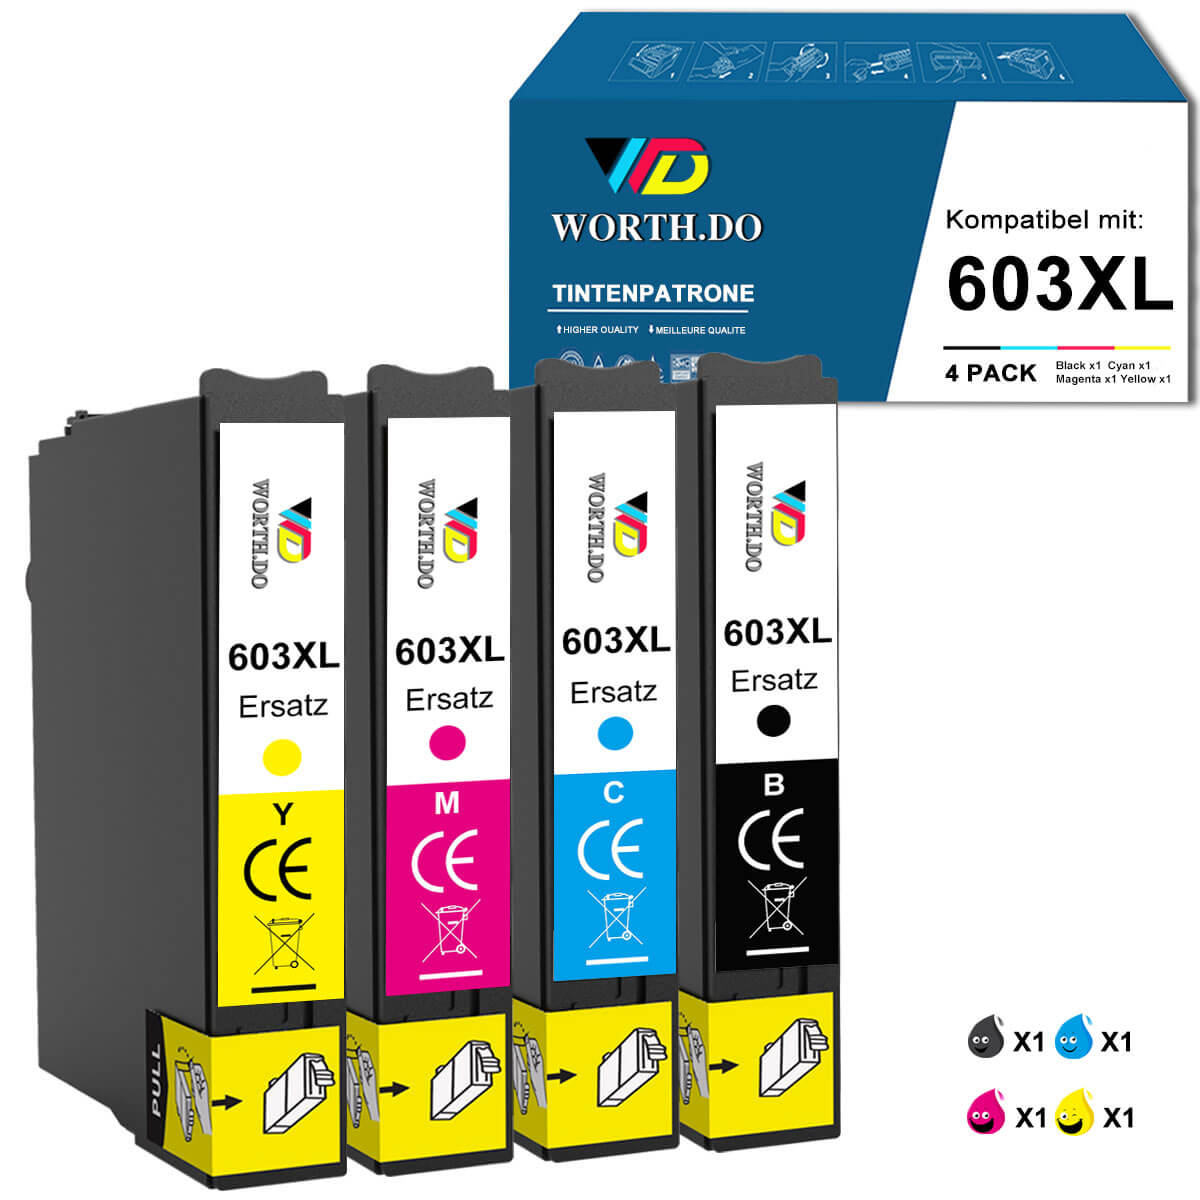 Epson 35 XL Multipack günstig kaufen - WorthDo – Worth.Do